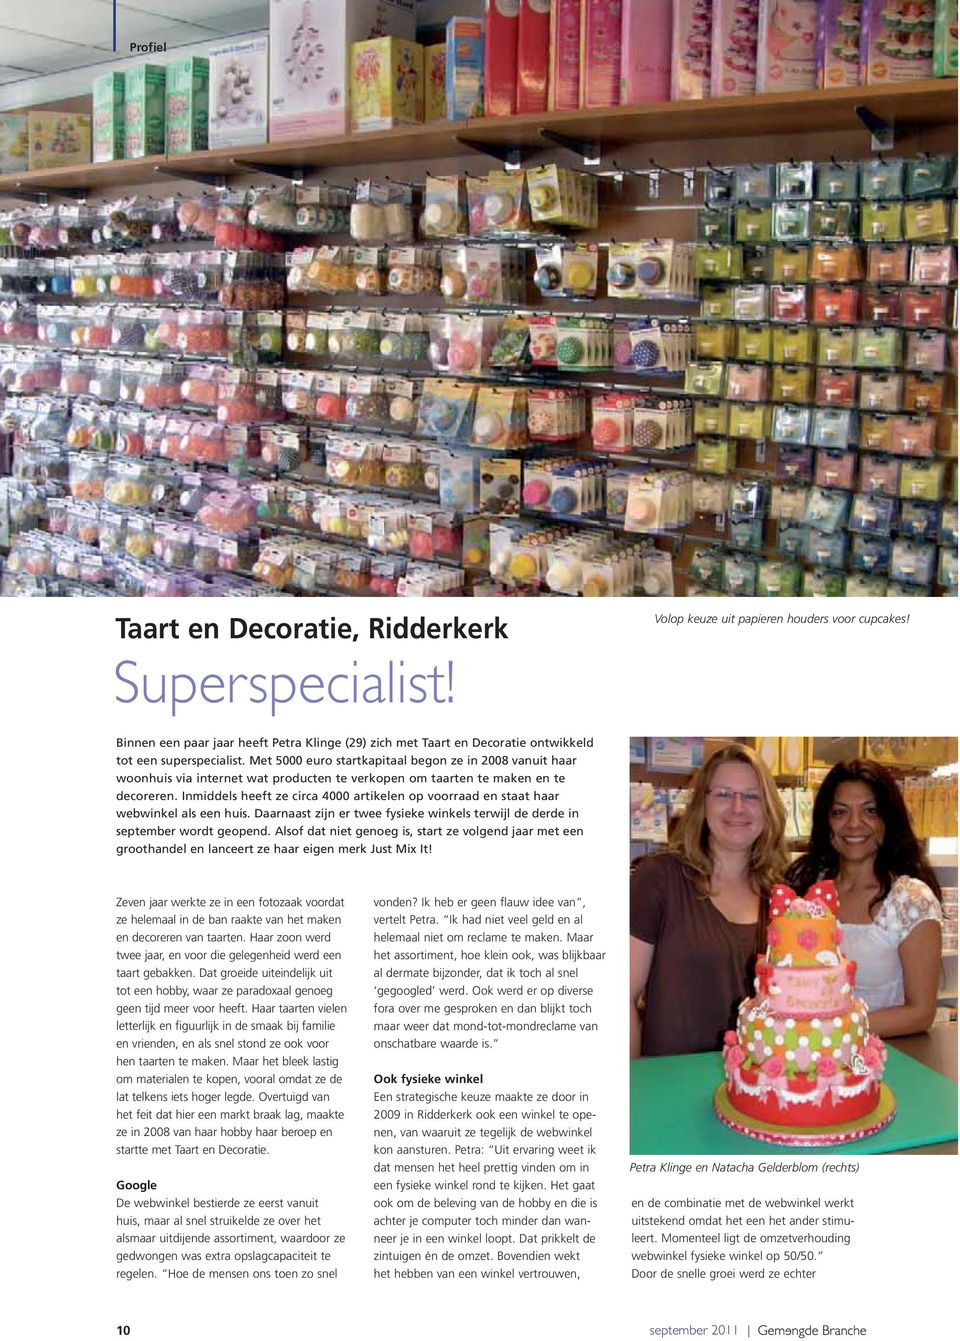 Met 5000 euro startkapitaal begon ze in 2008 vanuit haar woonhuis via internet wat producten te verkopen om taarten te maken en te decoreren.